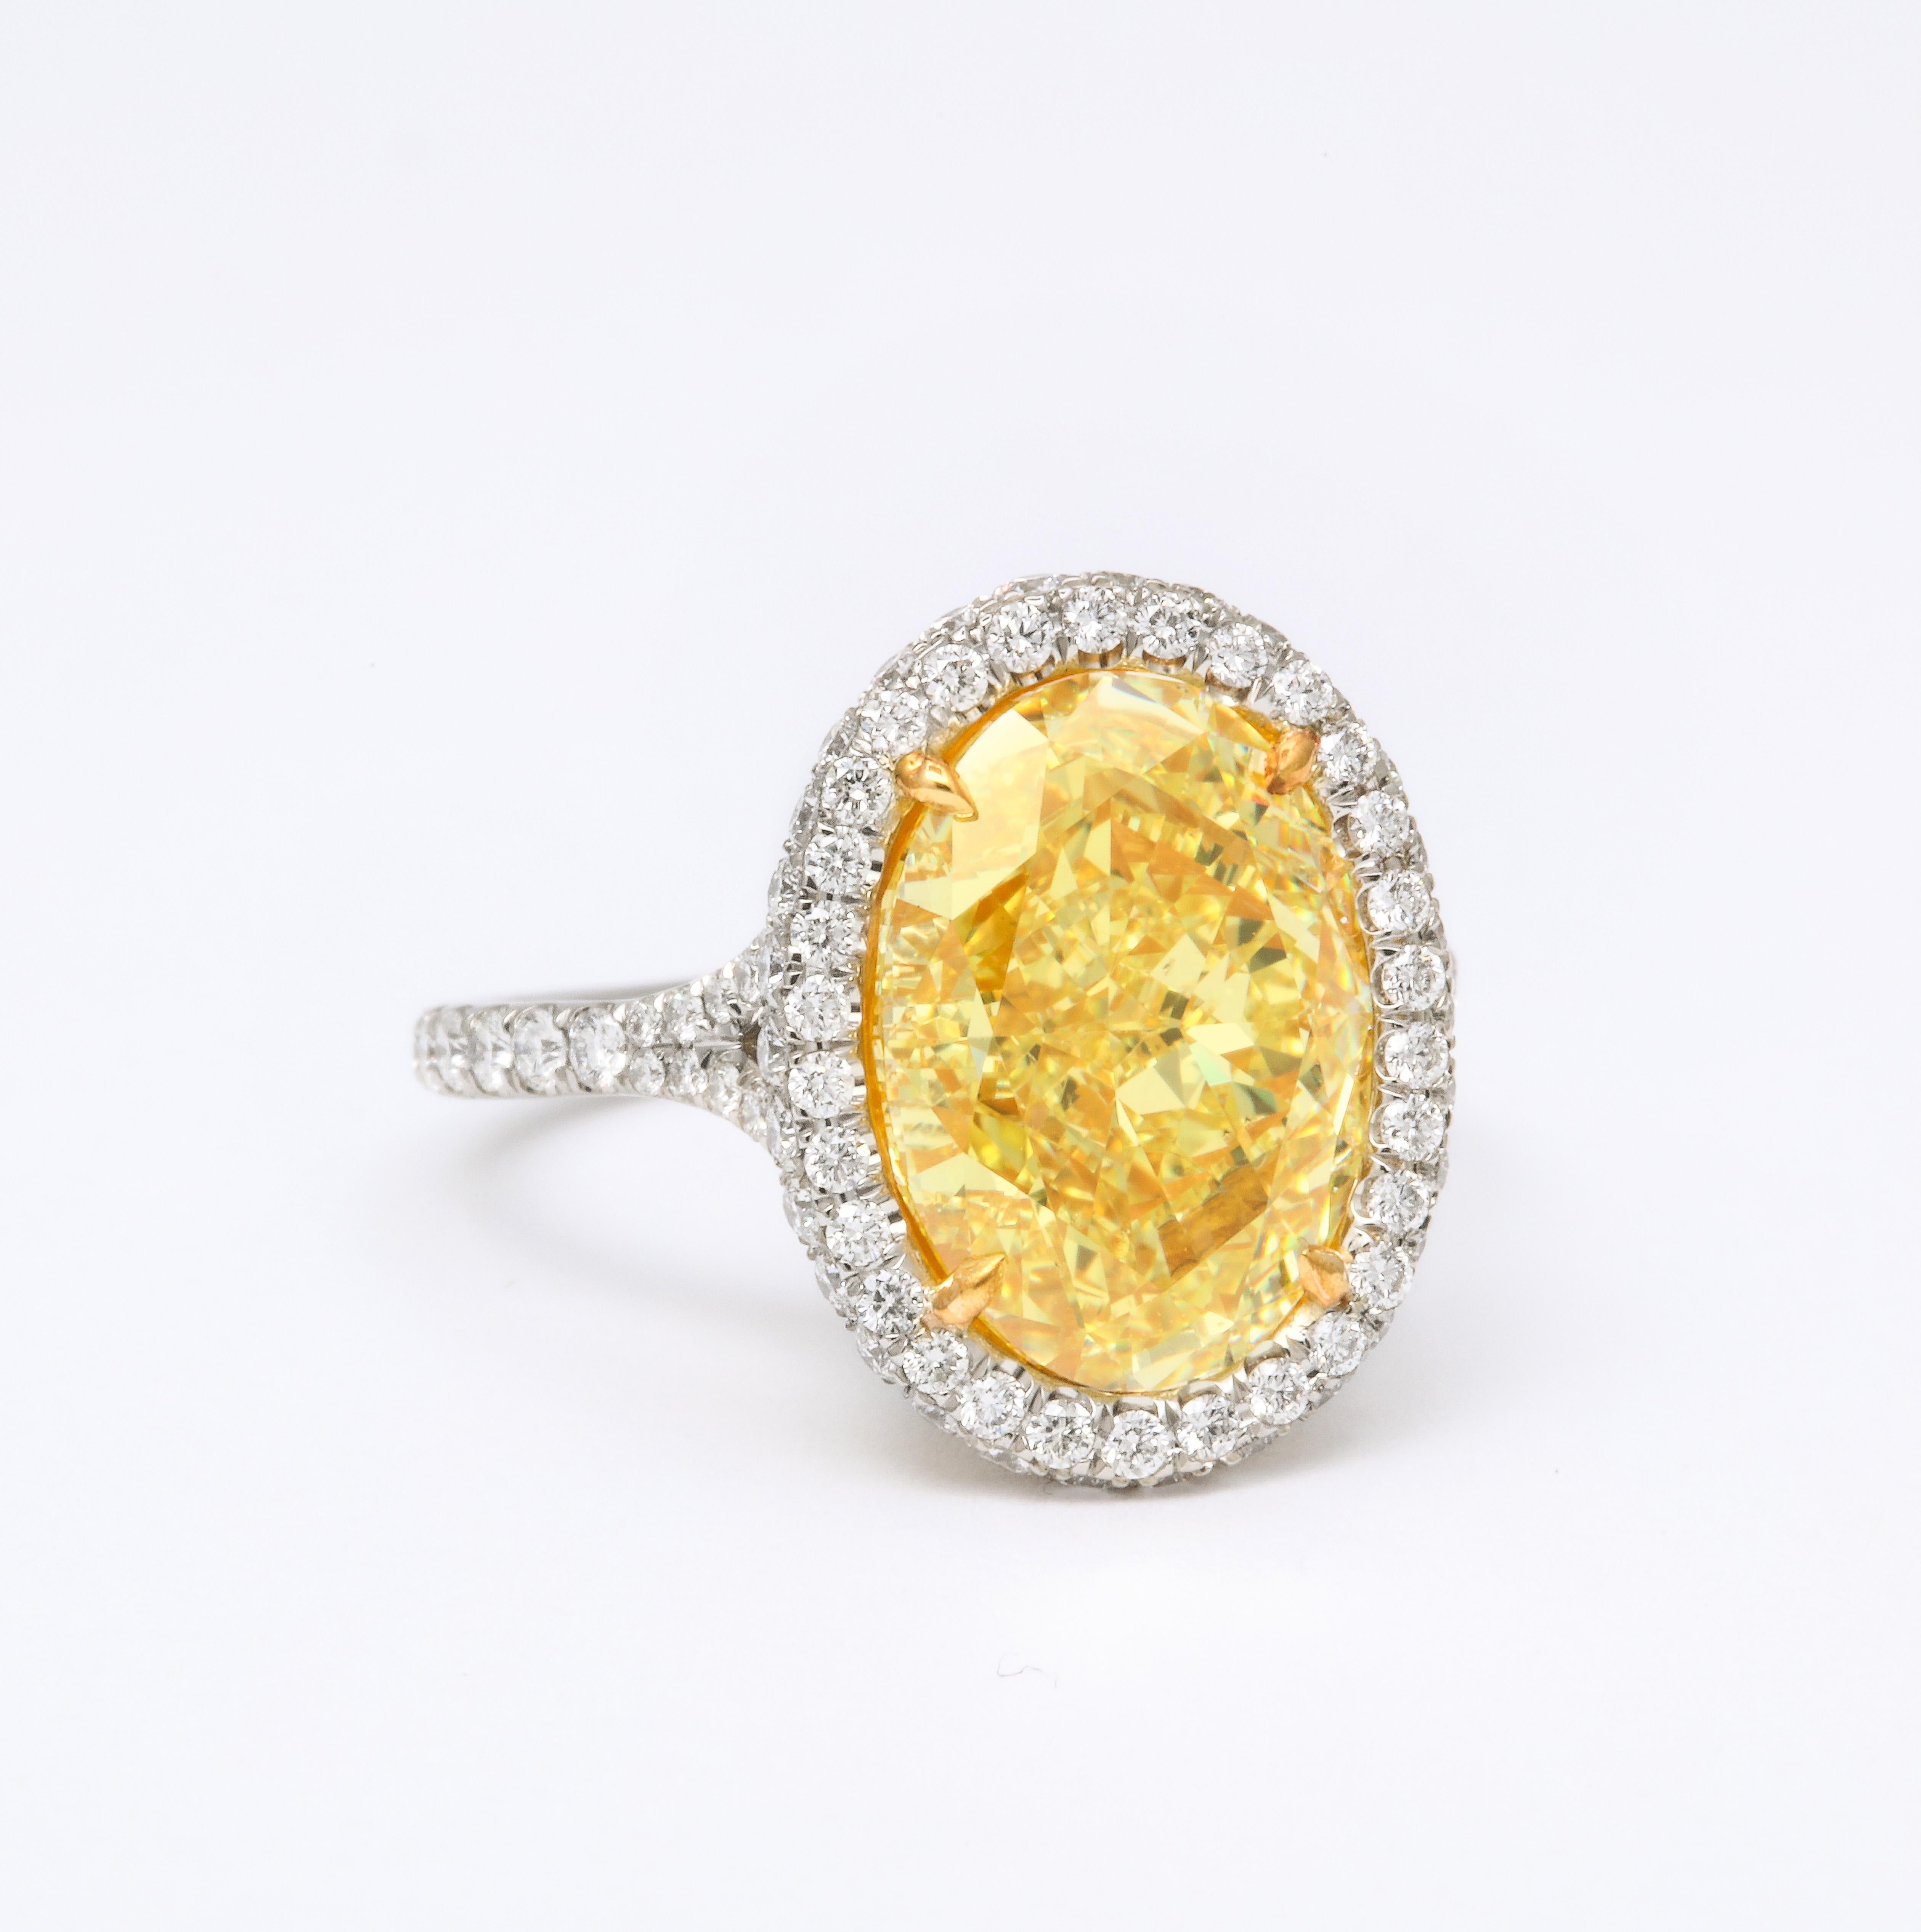 
Ein FABULOUS gelber Diamantring mit tief leuchtender gelber Farbe!

GIA-zertifiziert 5,05 Karat Fancy Yellow, VS2 Zentrum Diamant. 

Eingefasst in eine Platinfassung mit 0,85 Karat weißen, runden Diamanten im Brillantschliff.

Der zentrale Diamant